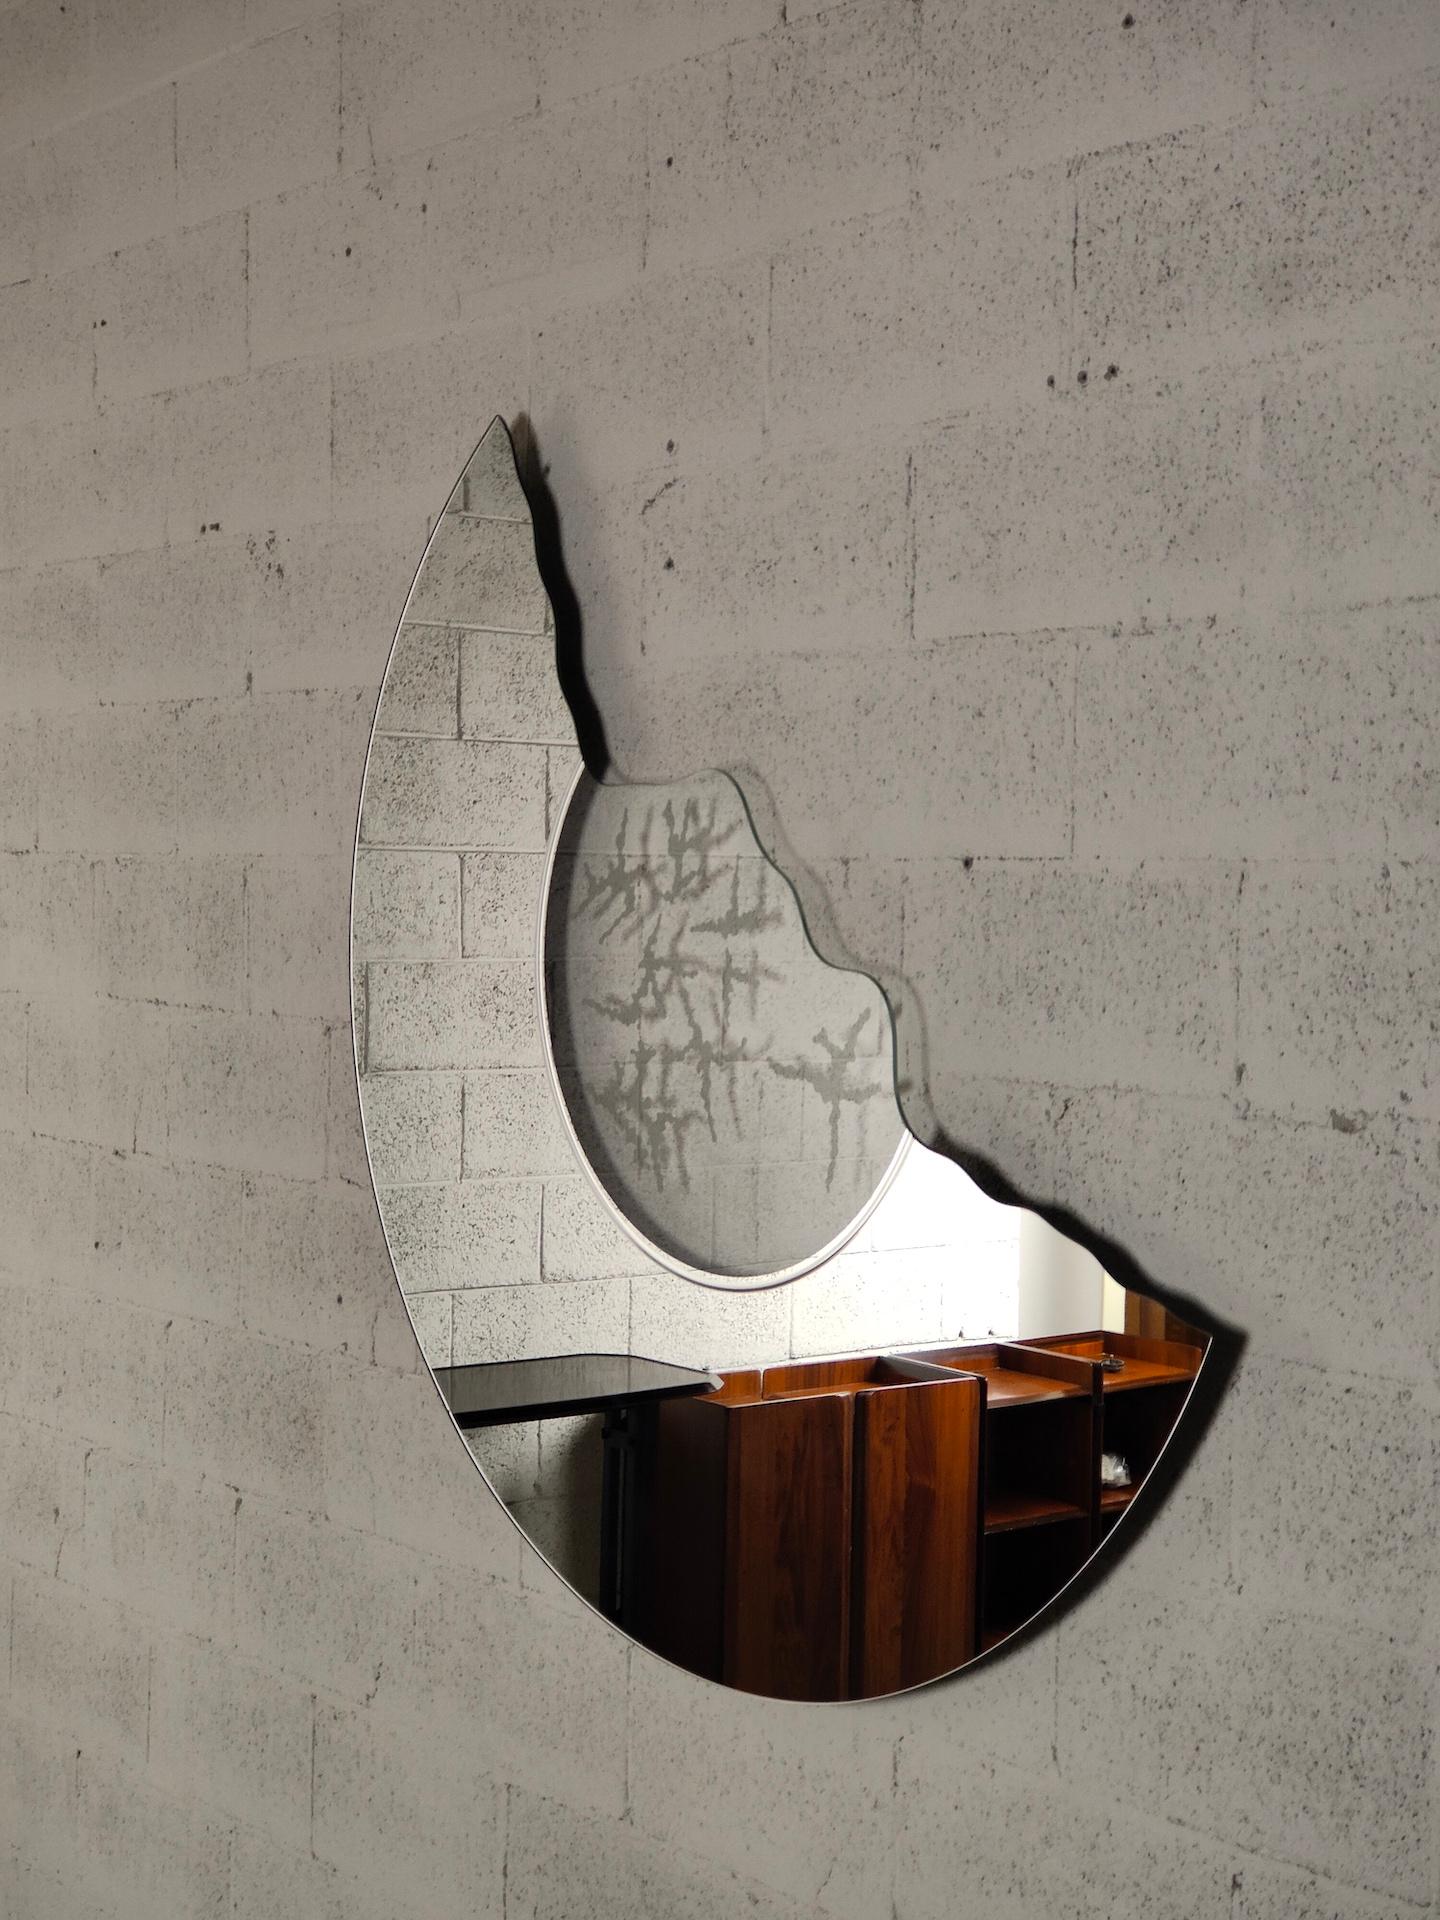 Der von Nanda Vigo für Glas Italia entworfene Spiegel Scornice ist eine Serie von Spiegeln mit Rahmenmotiven und satinierten Verzierungen auf der transparenten Oberfläche, die die Reflexionen des Glases wiederholen.

Fernanda Enrica Leonia Vigo,